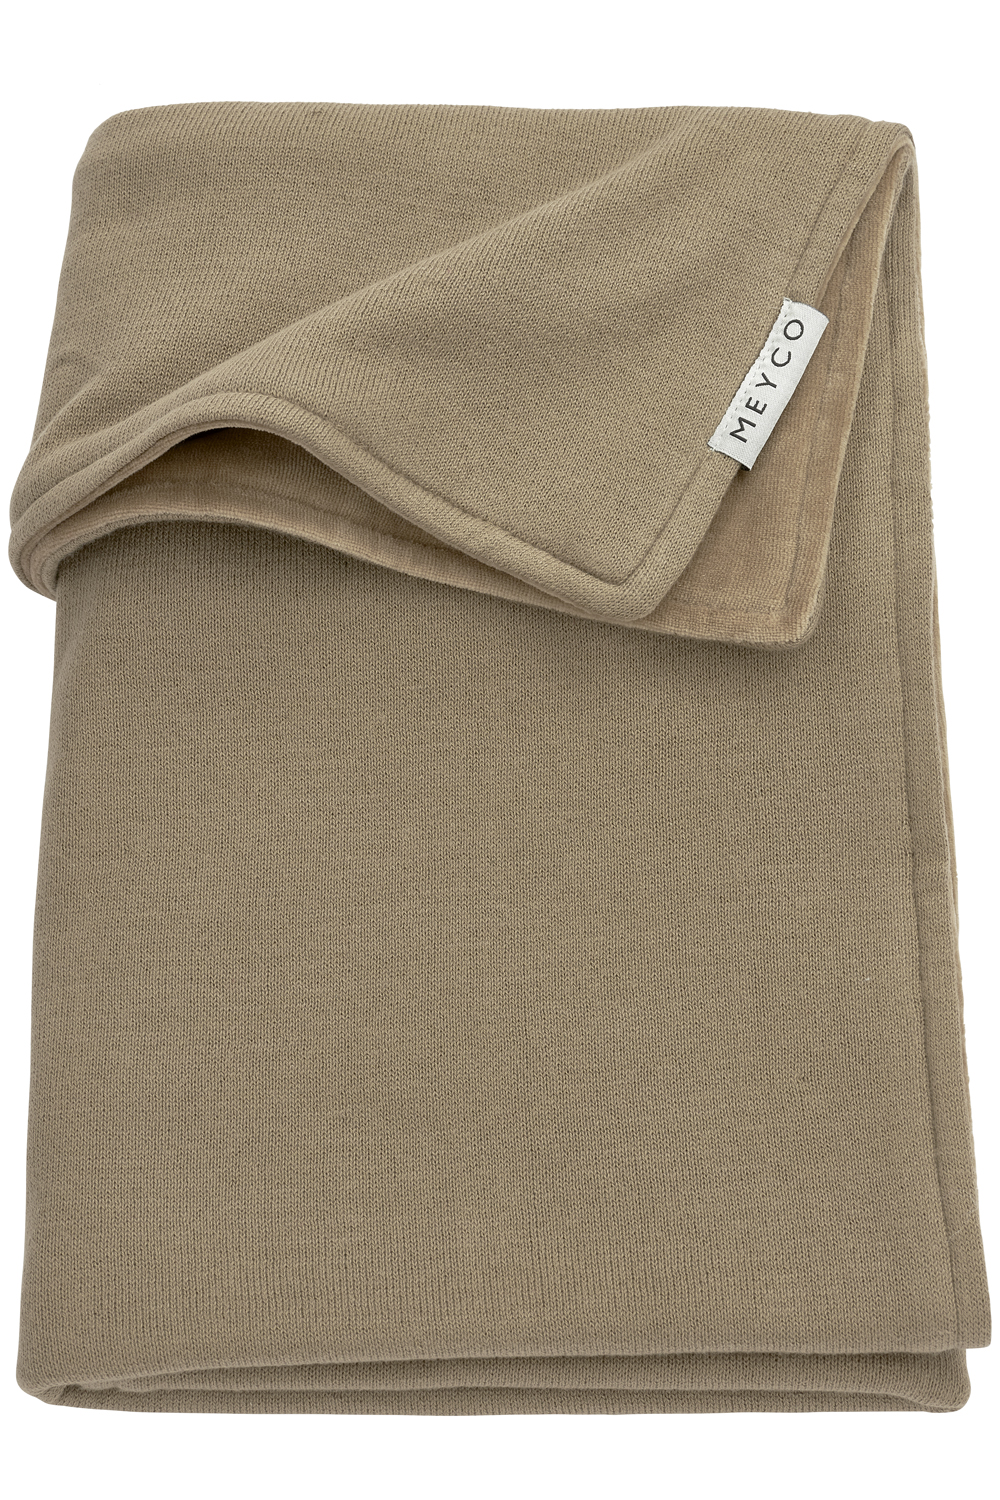 Ledikant deken Knit Basic velvet - taupe - 100x150cm